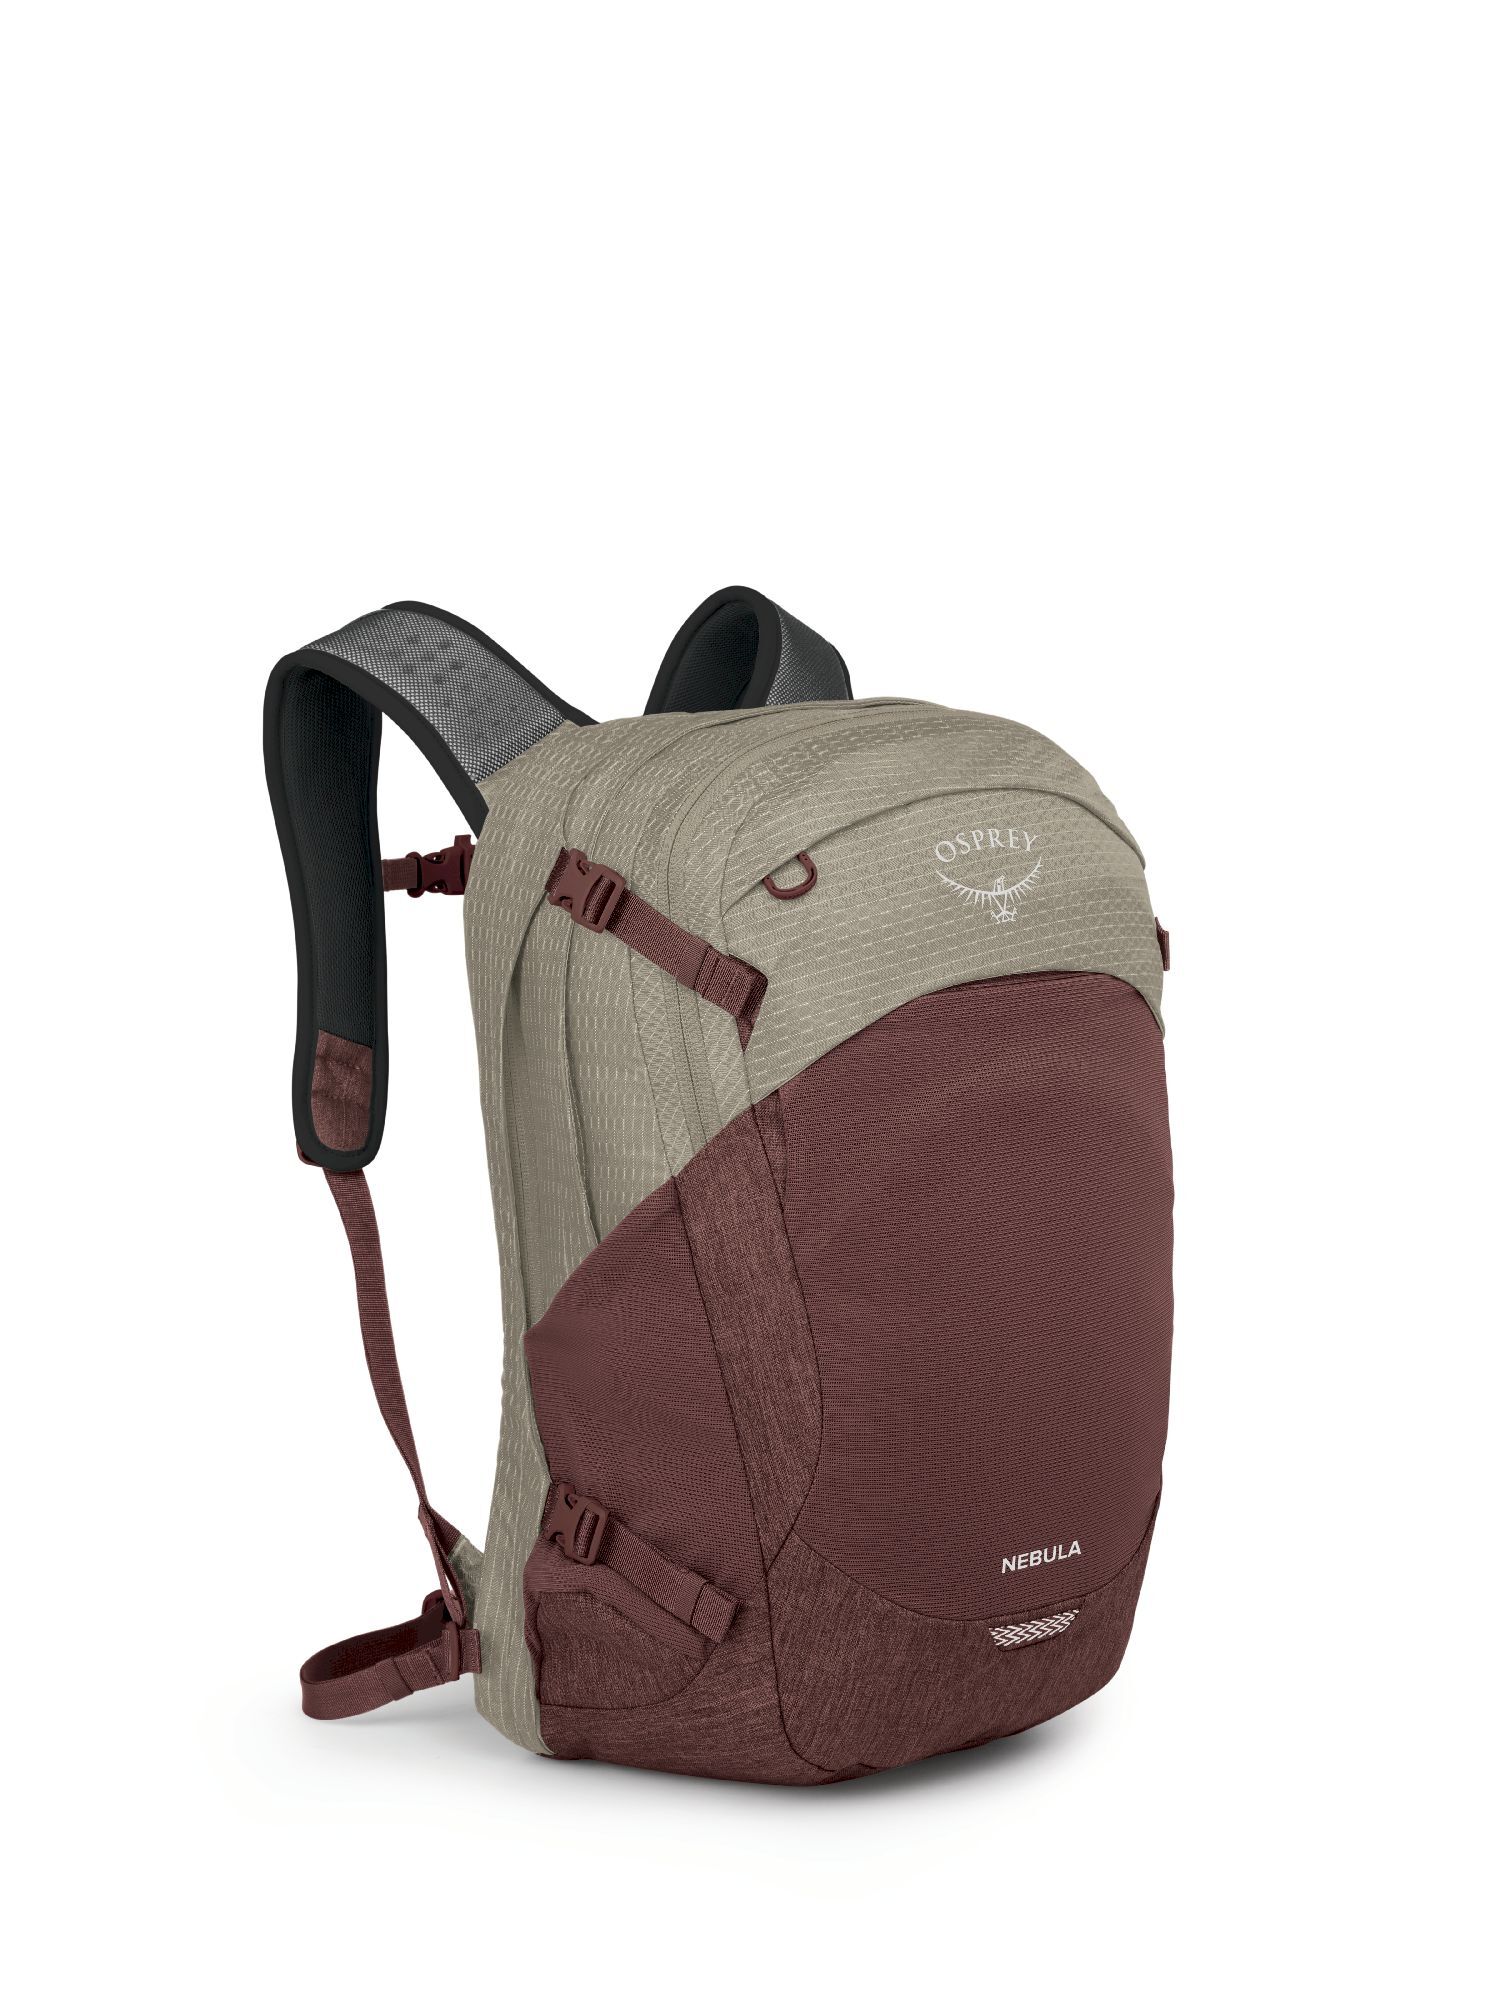 Osprey Nebula - Backpack - Men's